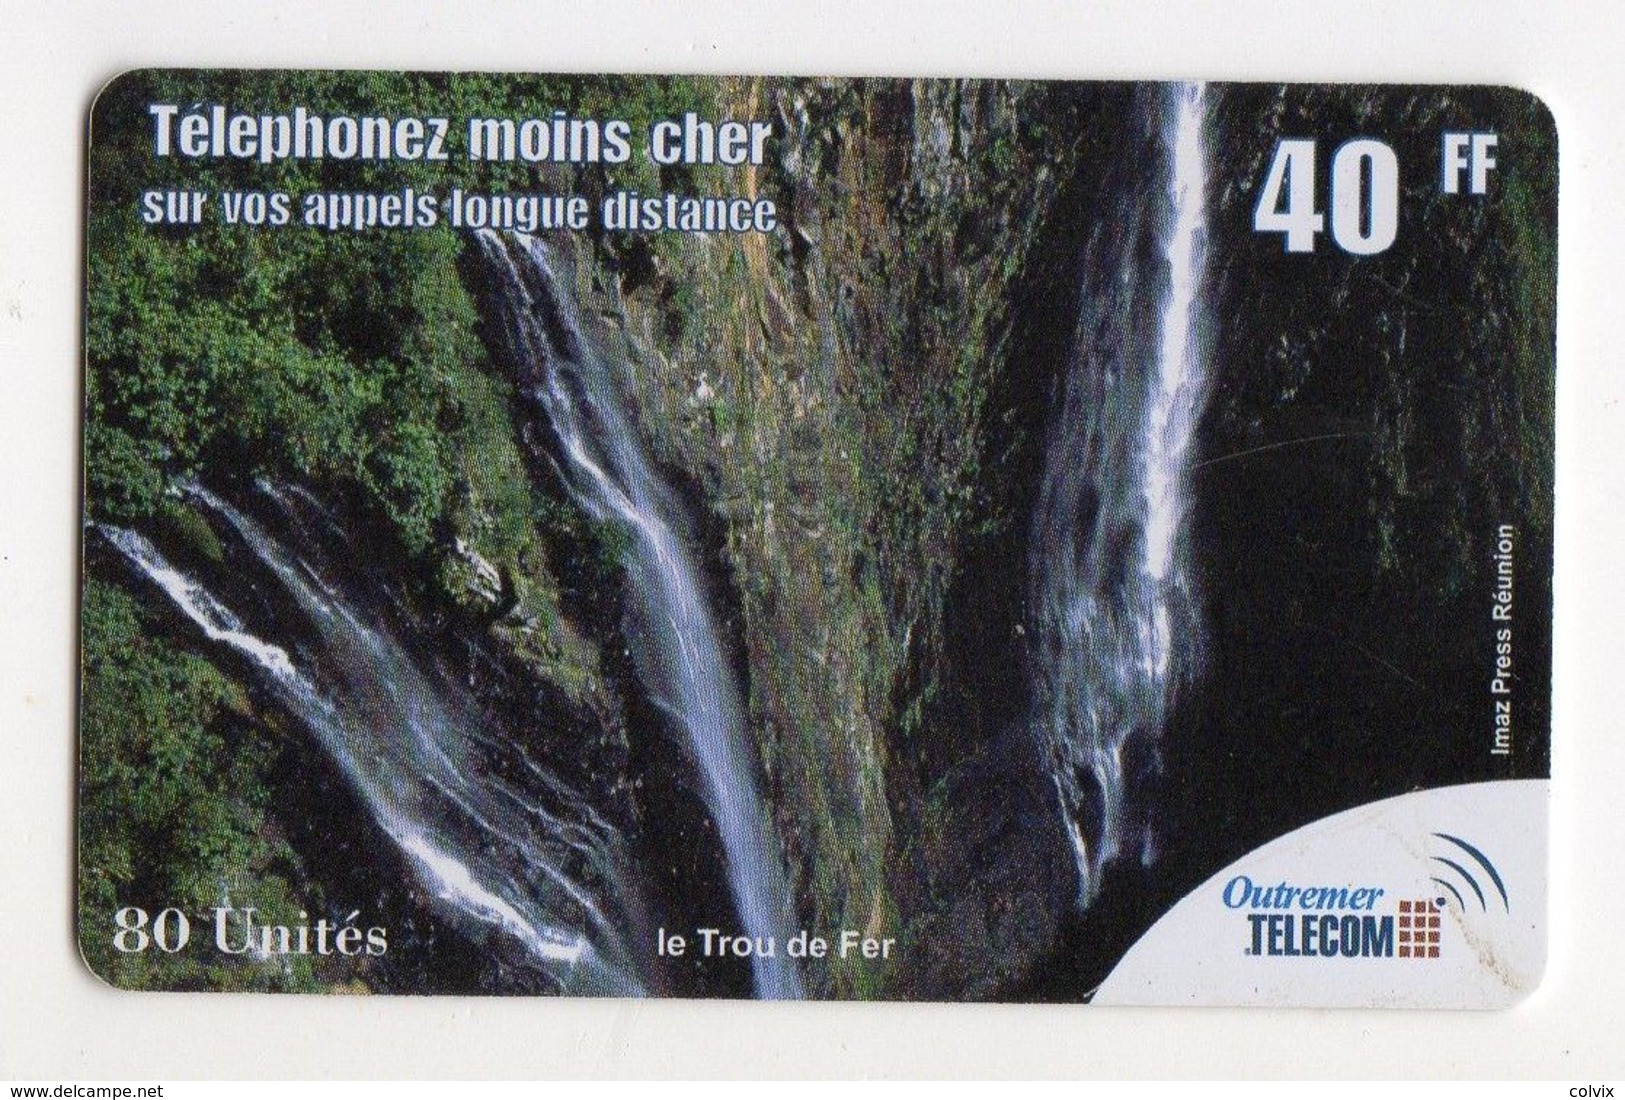 ANTILLES FRANCAISE PREPAYEE OUTREMER TELECOM LE TROU DE FER 40FF - Antillas (Francesas)